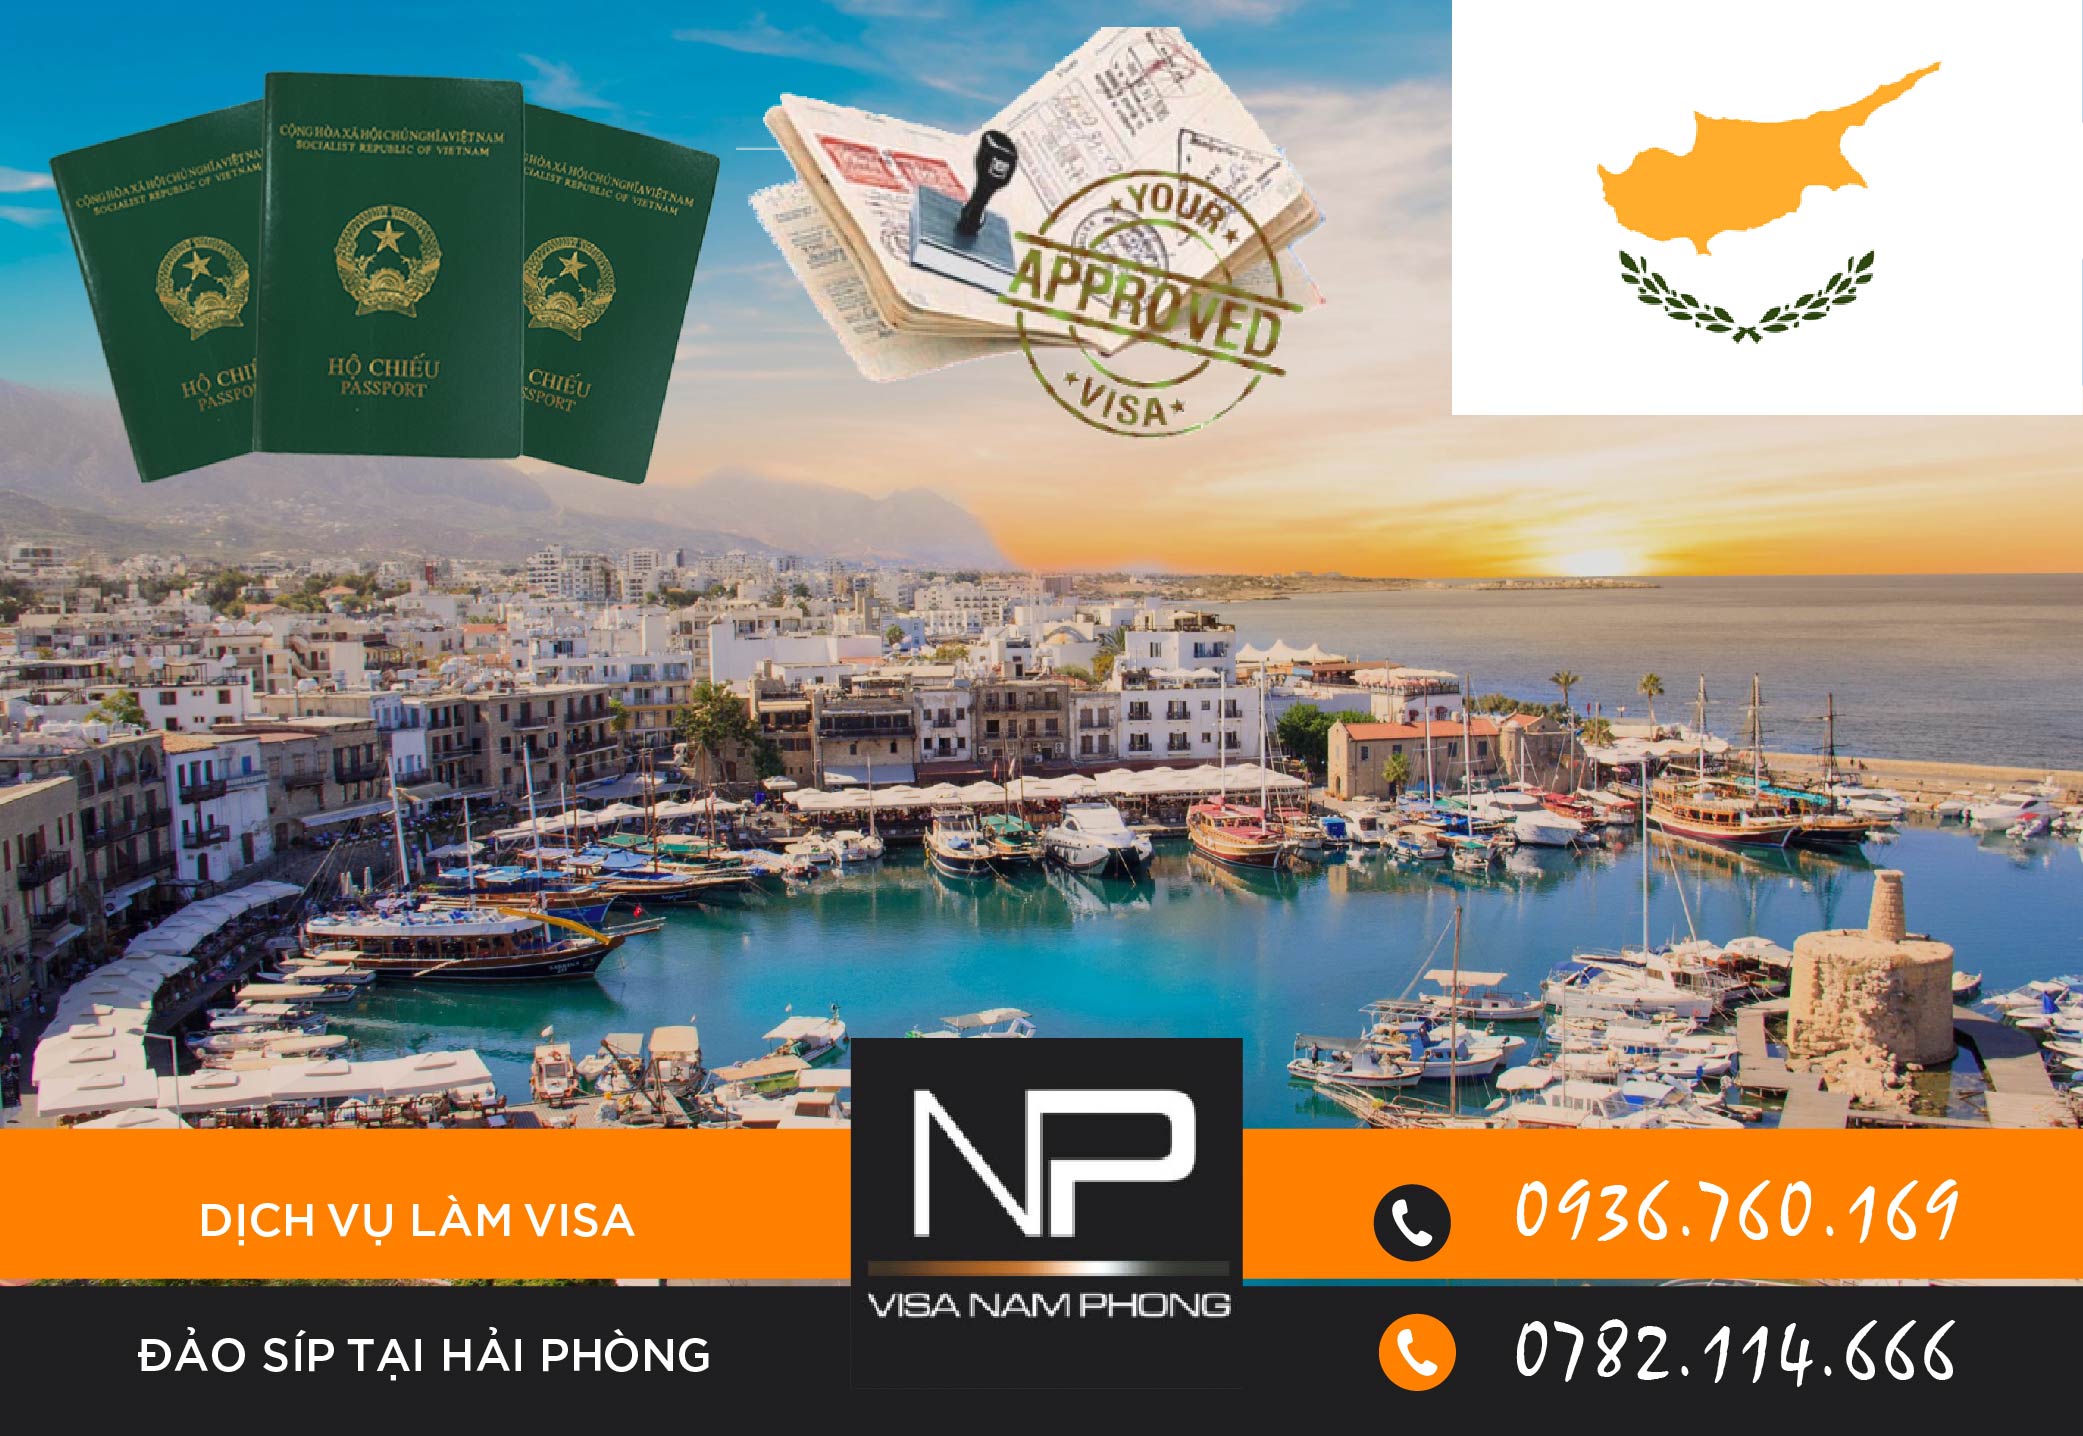 Dịch vụ làm visa Đảo Síp tại Hải Phòng